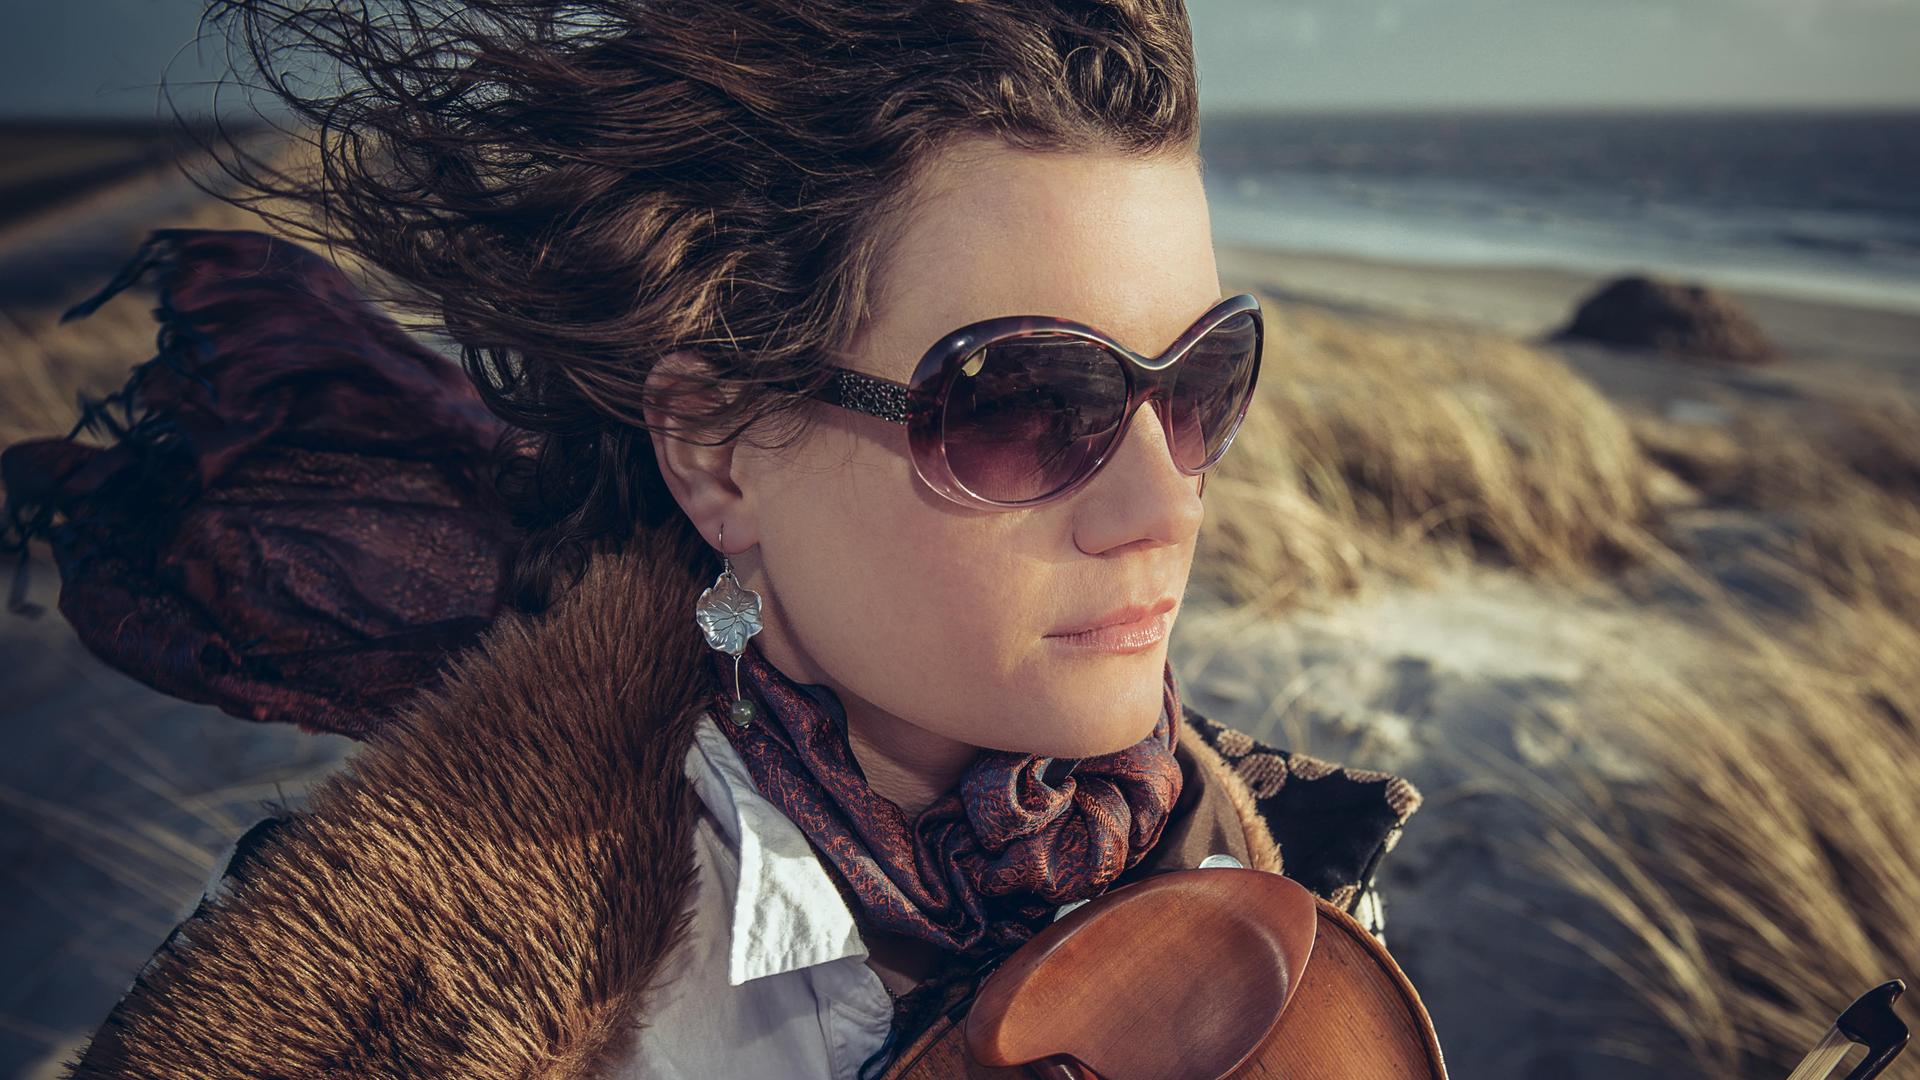 Eine Frau trägt Sonnenbrille und eine Jacke mit Pelzkragen über einer weißen Bluse. Der Wind weht ihre Haare und den buten Schal nach hinten. Auf ihrer Brust liegt locker eine Geige auf. Im Hintergrund sind Dünen und ein Meeresstrand zu sehen.